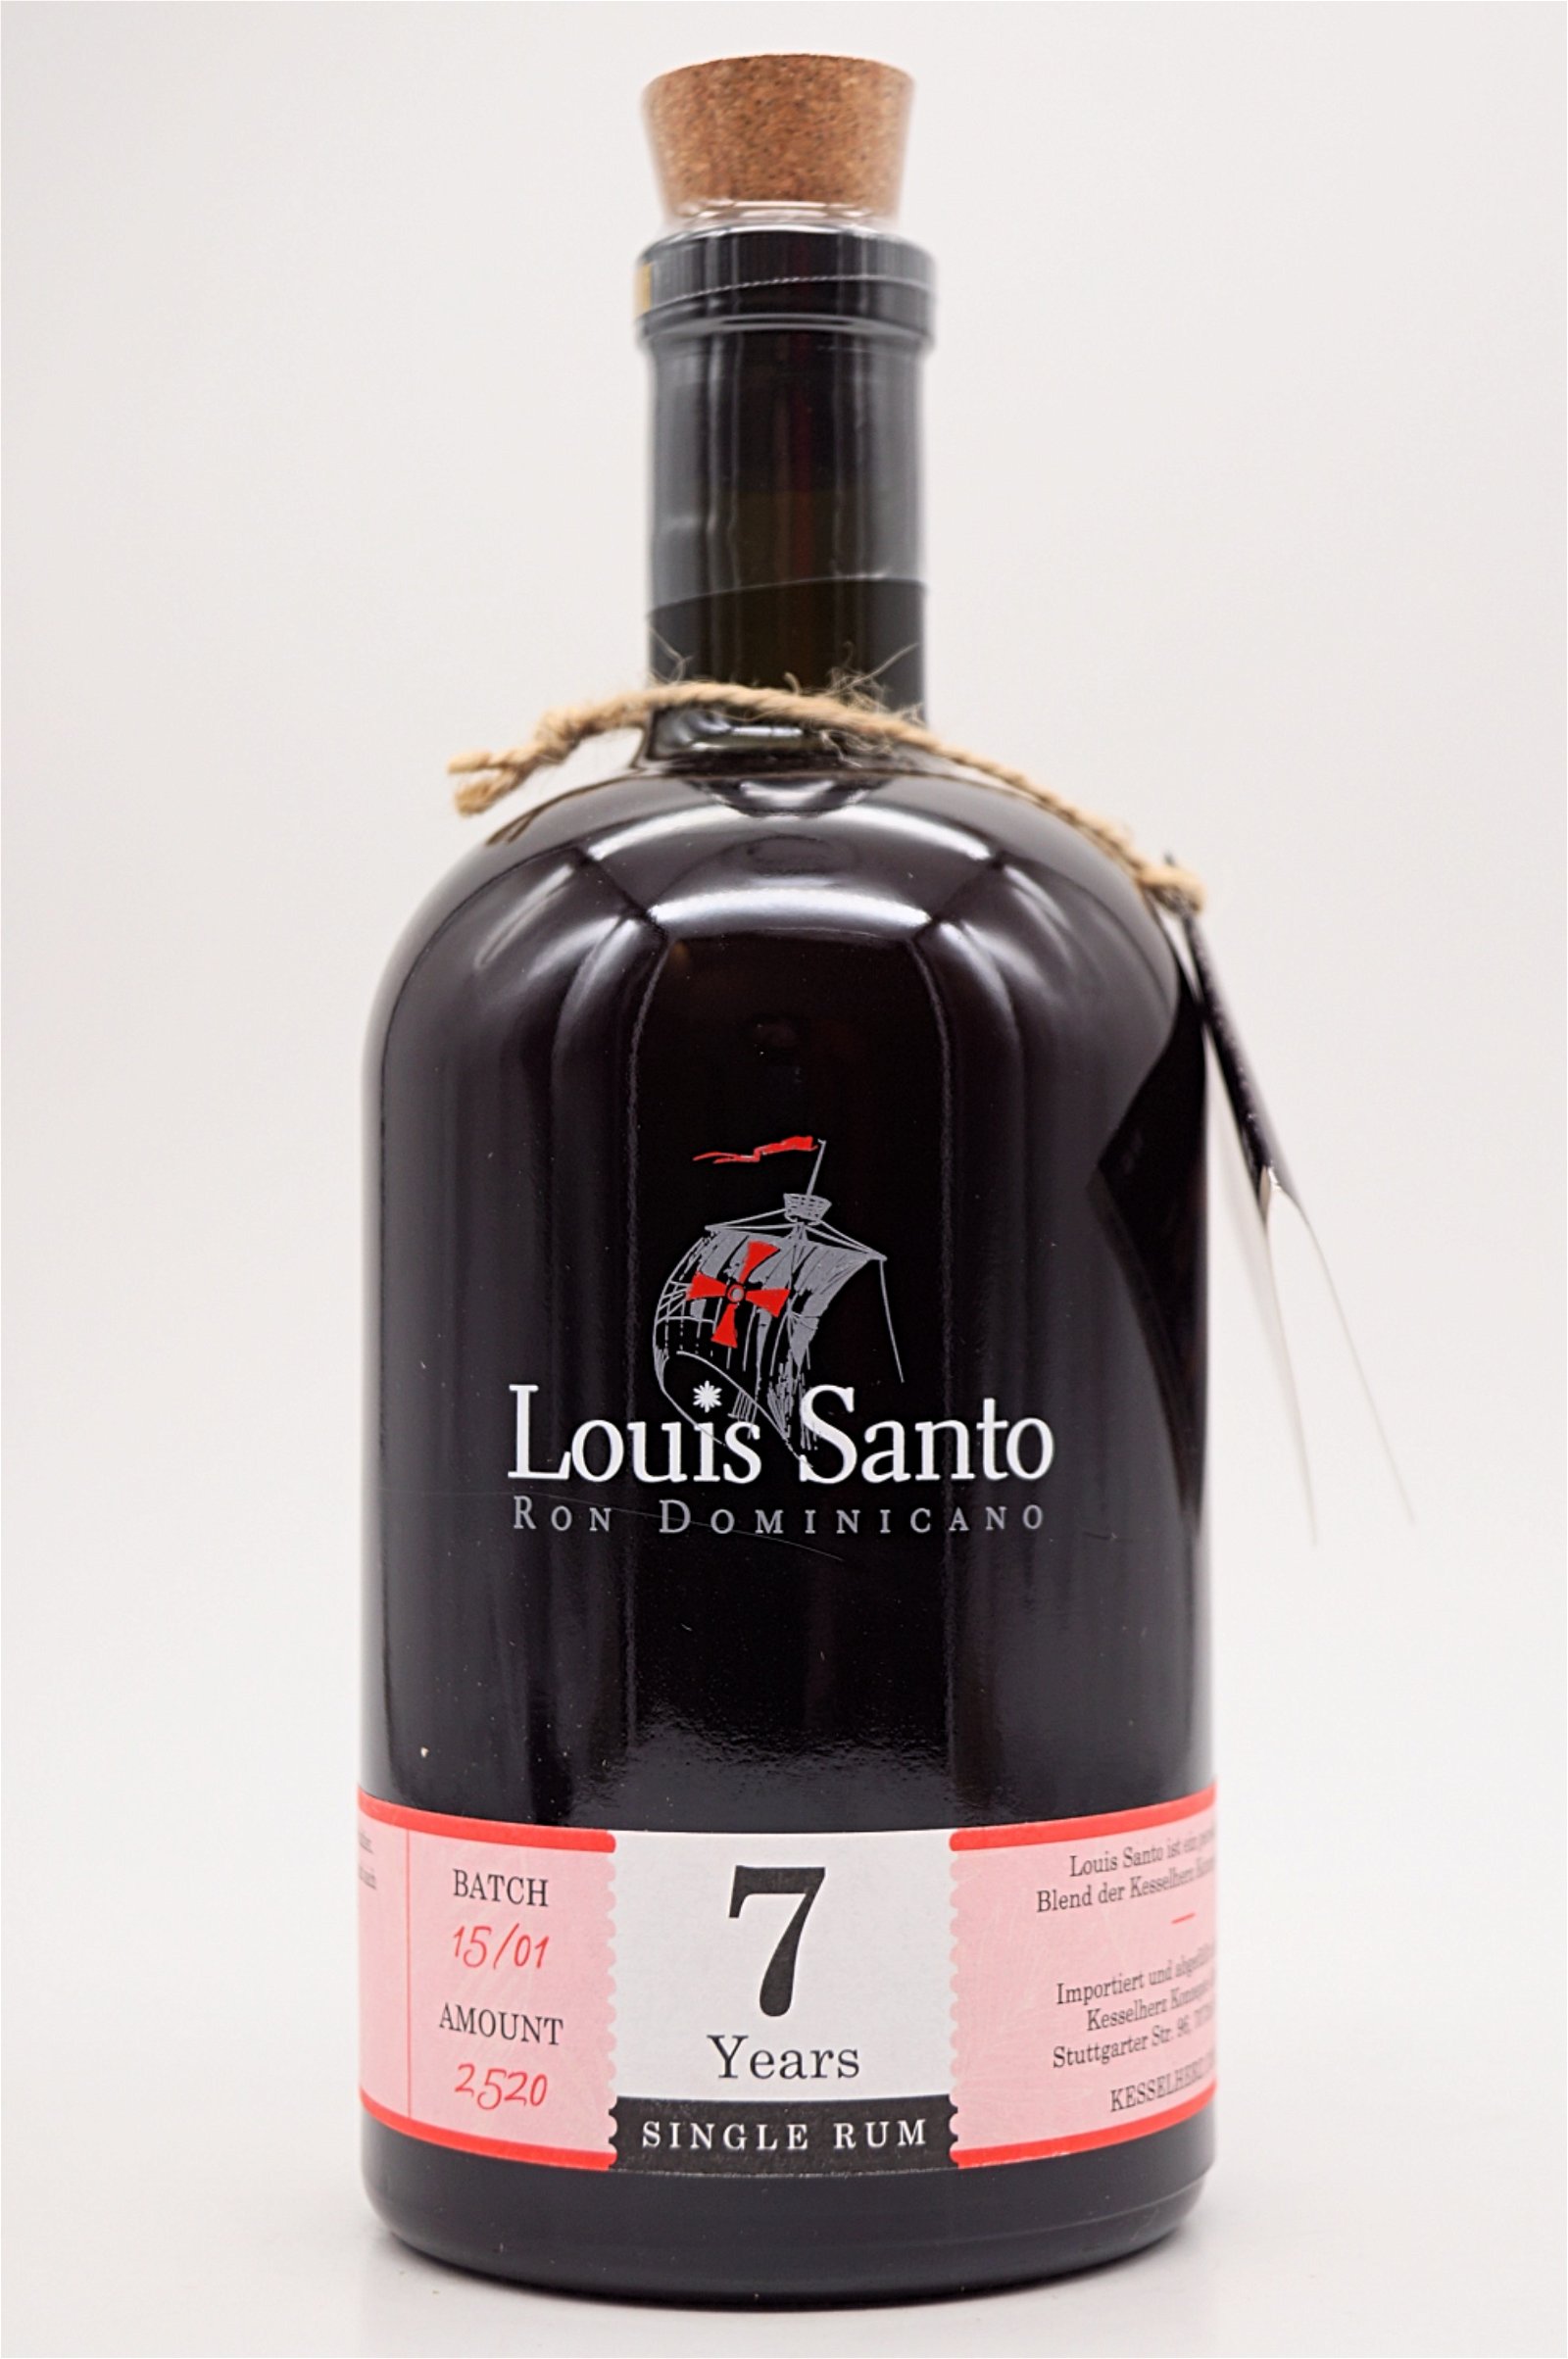 Louis Santo 7 Jahre Single Rum Batch 15/01